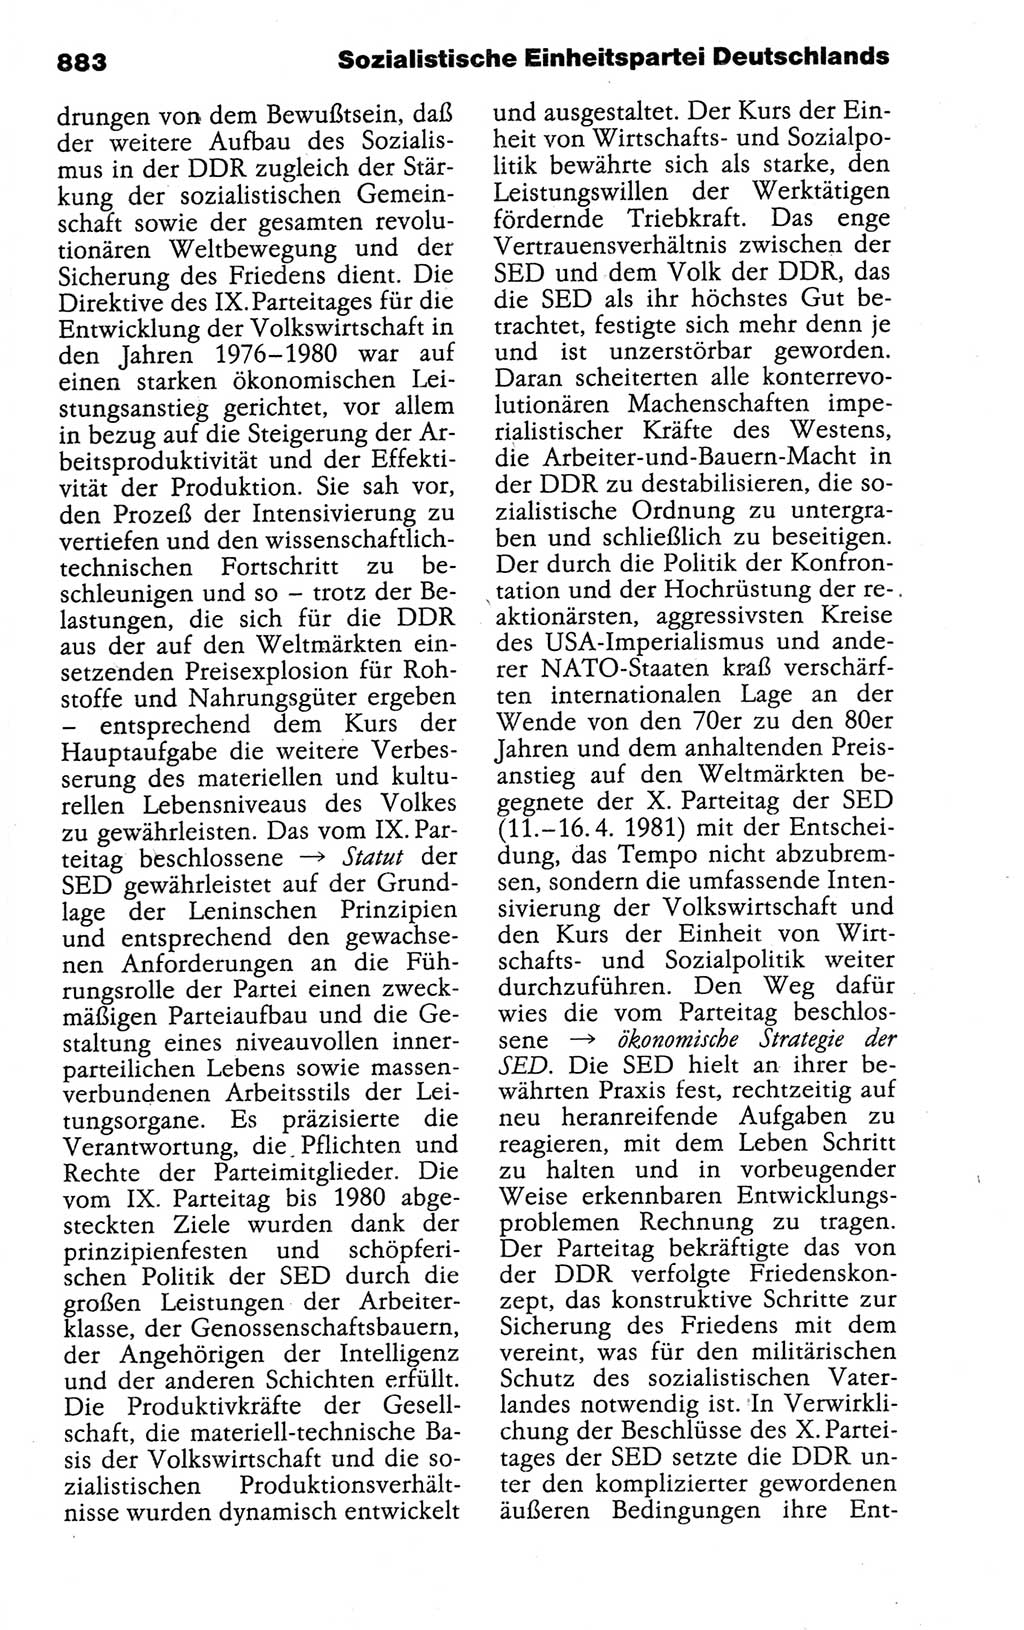 Kleines politisches Wörterbuch [Deutsche Demokratische Republik (DDR)] 1988, Seite 883 (Kl. pol. Wb. DDR 1988, S. 883)